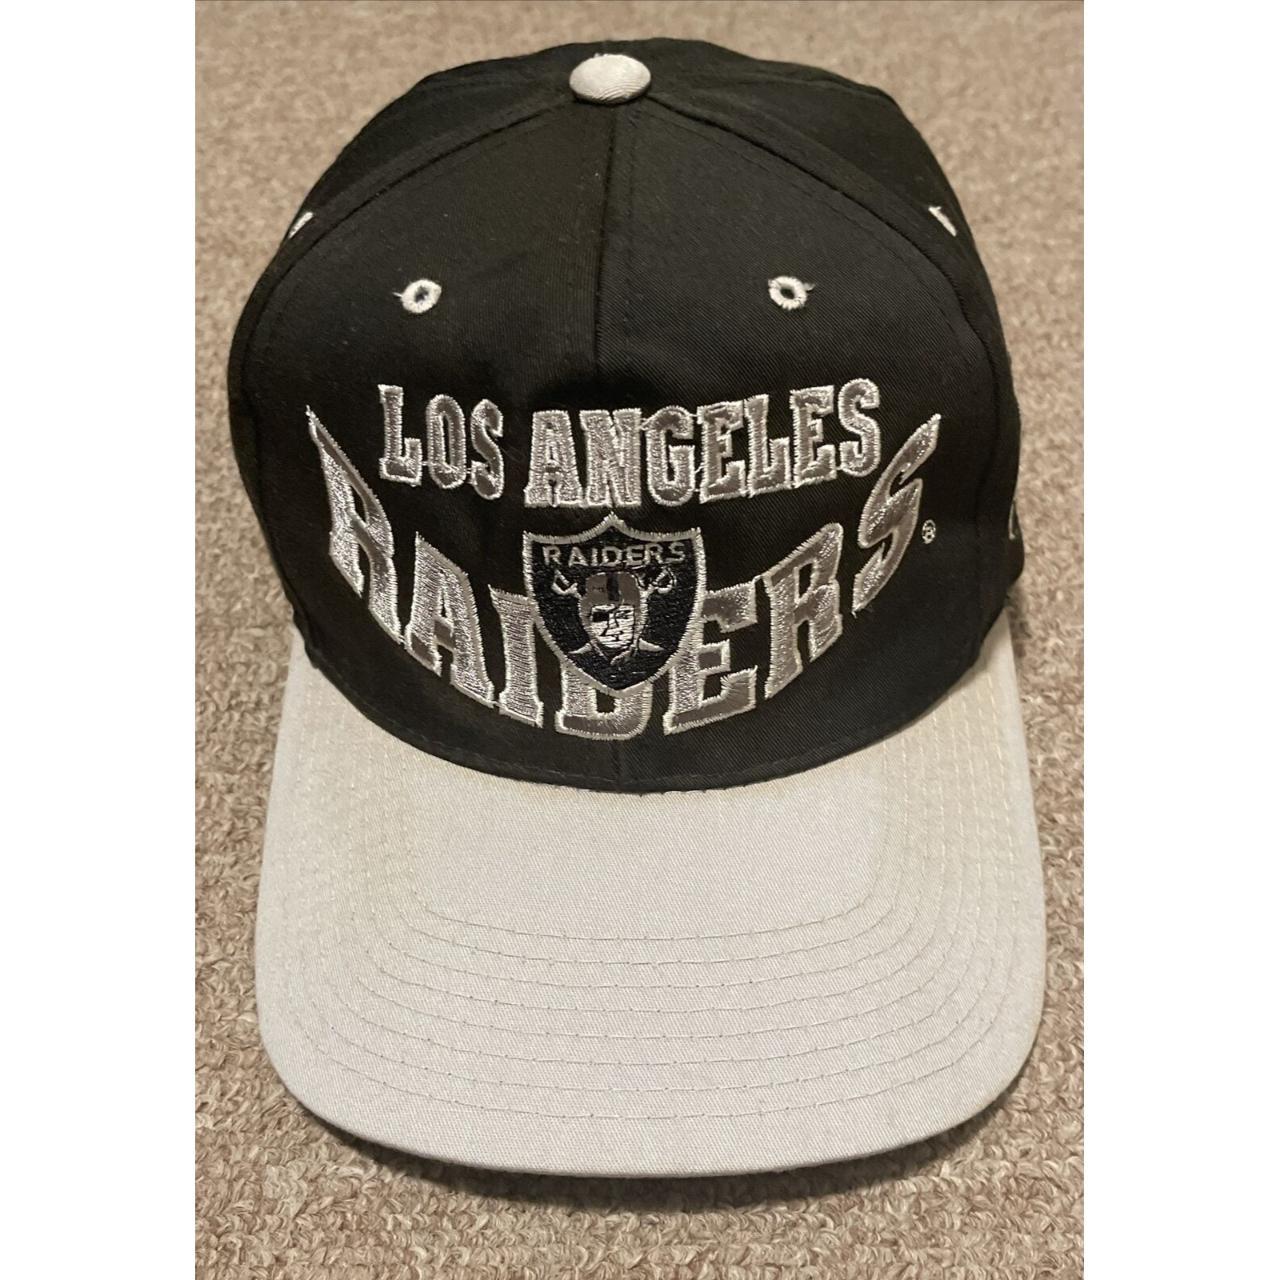 90s Raiders Logo Cap